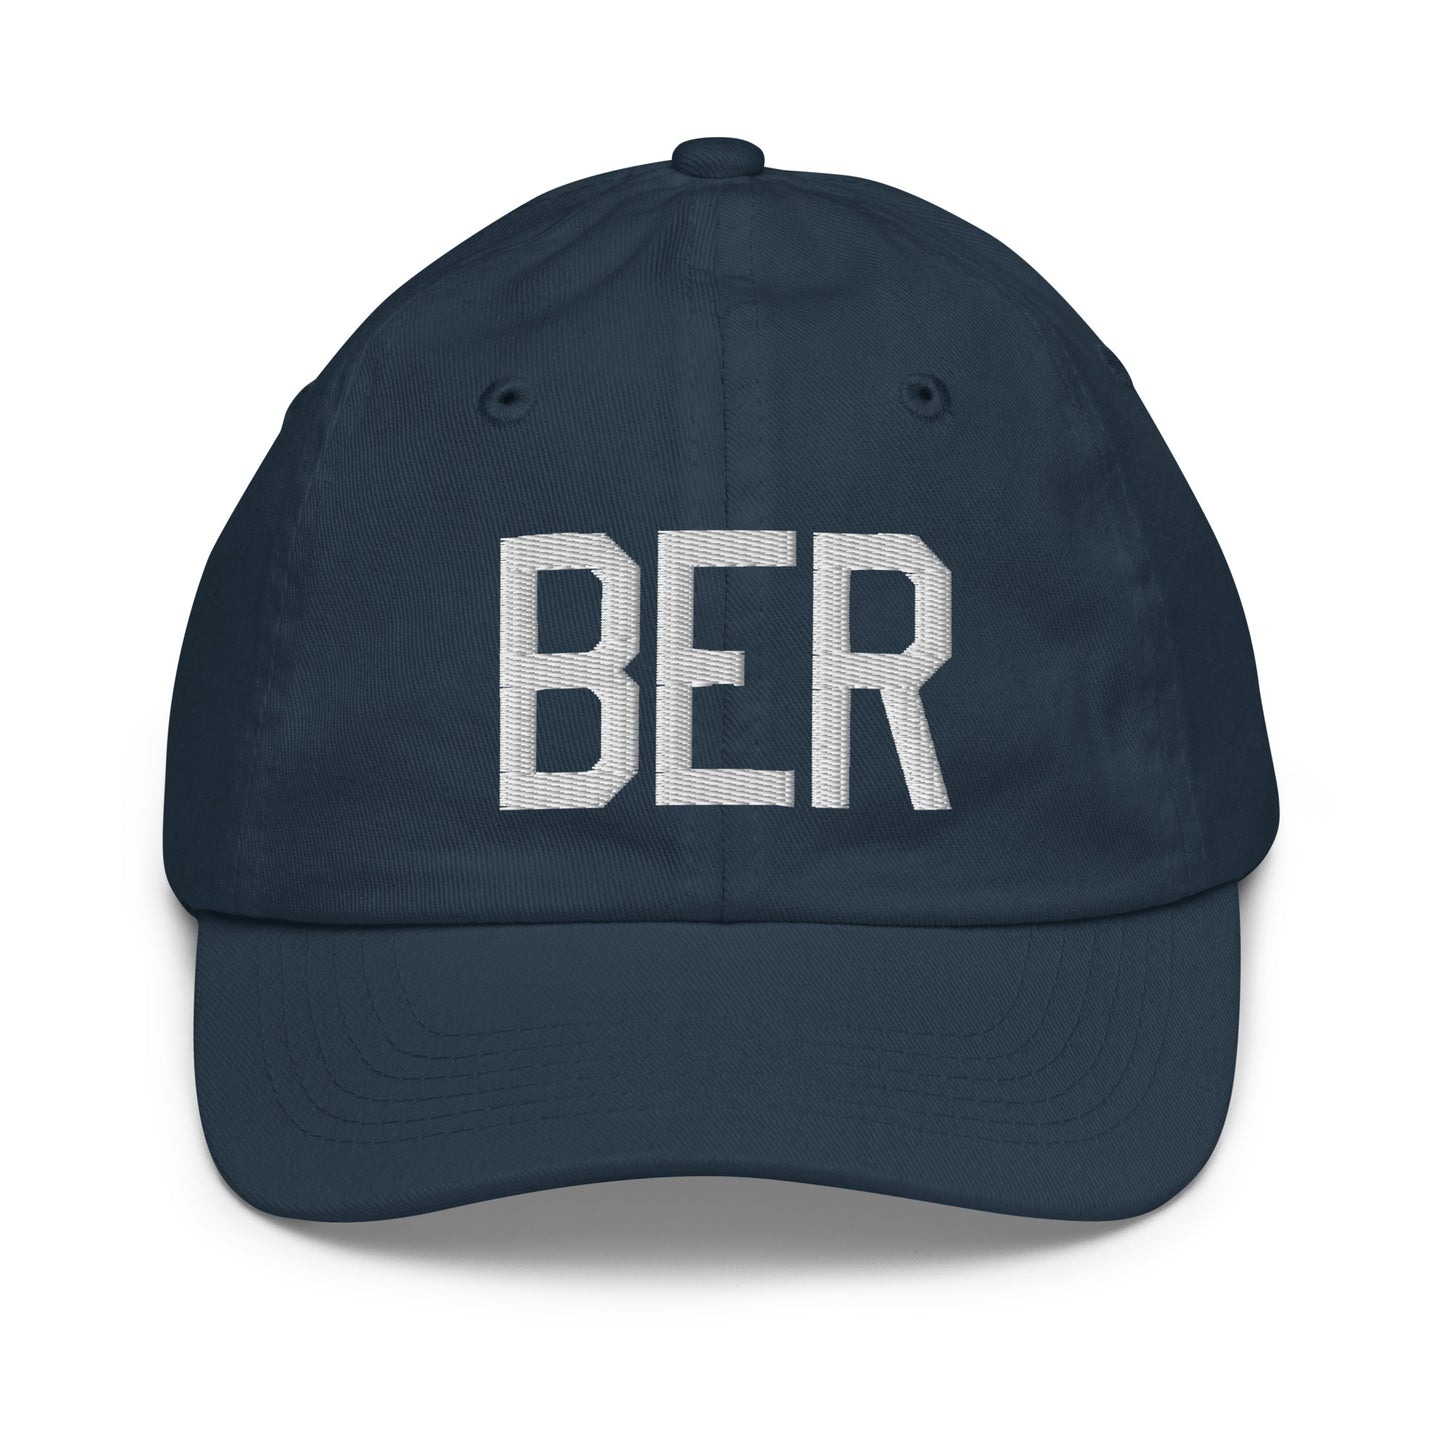 Airport Code Kid's Baseball Cap - White • BER Berlin • YHM Designs - Image 14